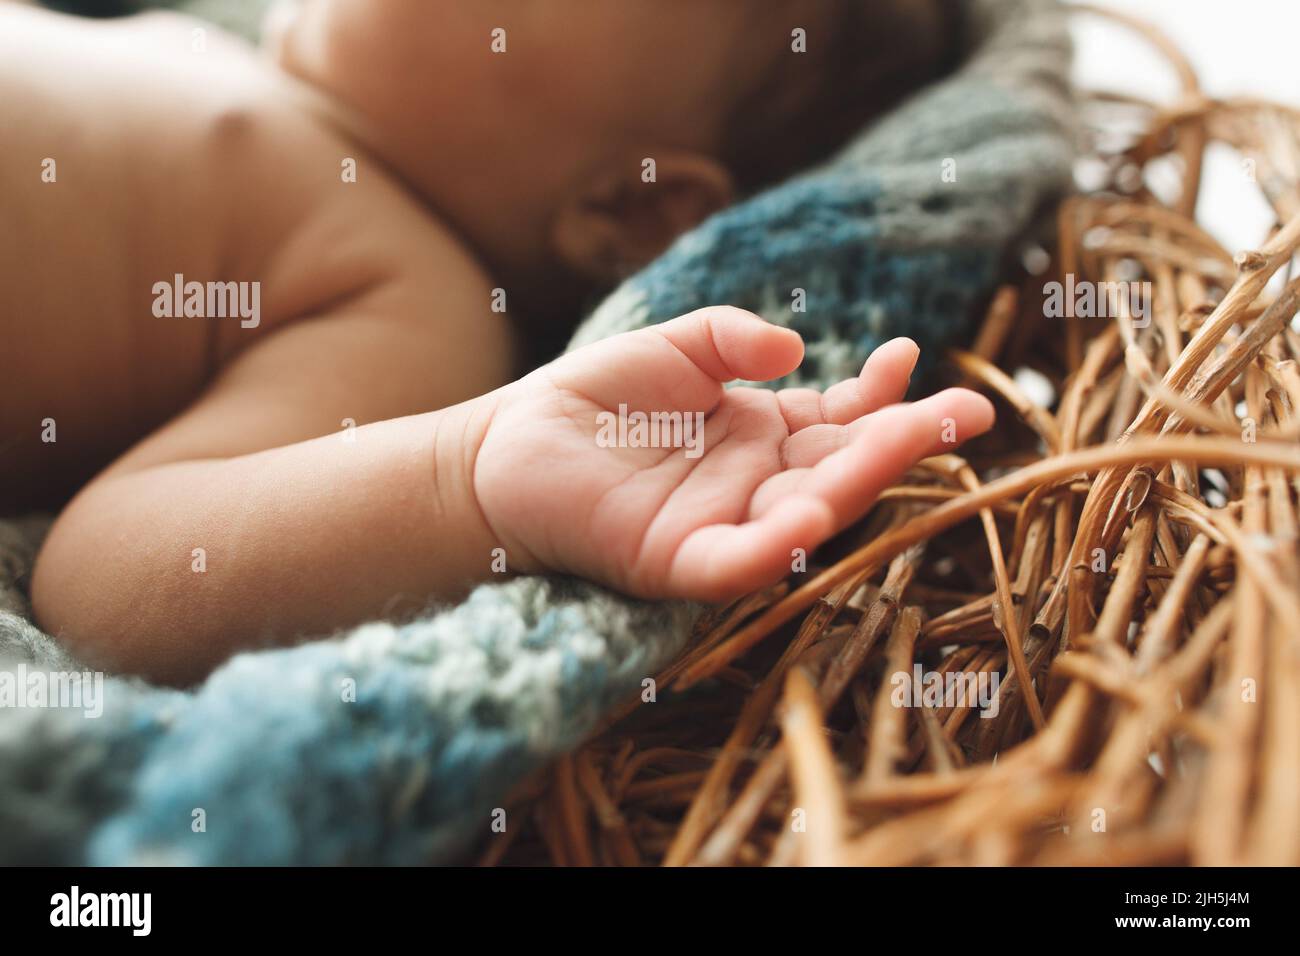 Gros plan d'un petit enfant nouveau-né main dans le nid Banque D'Images